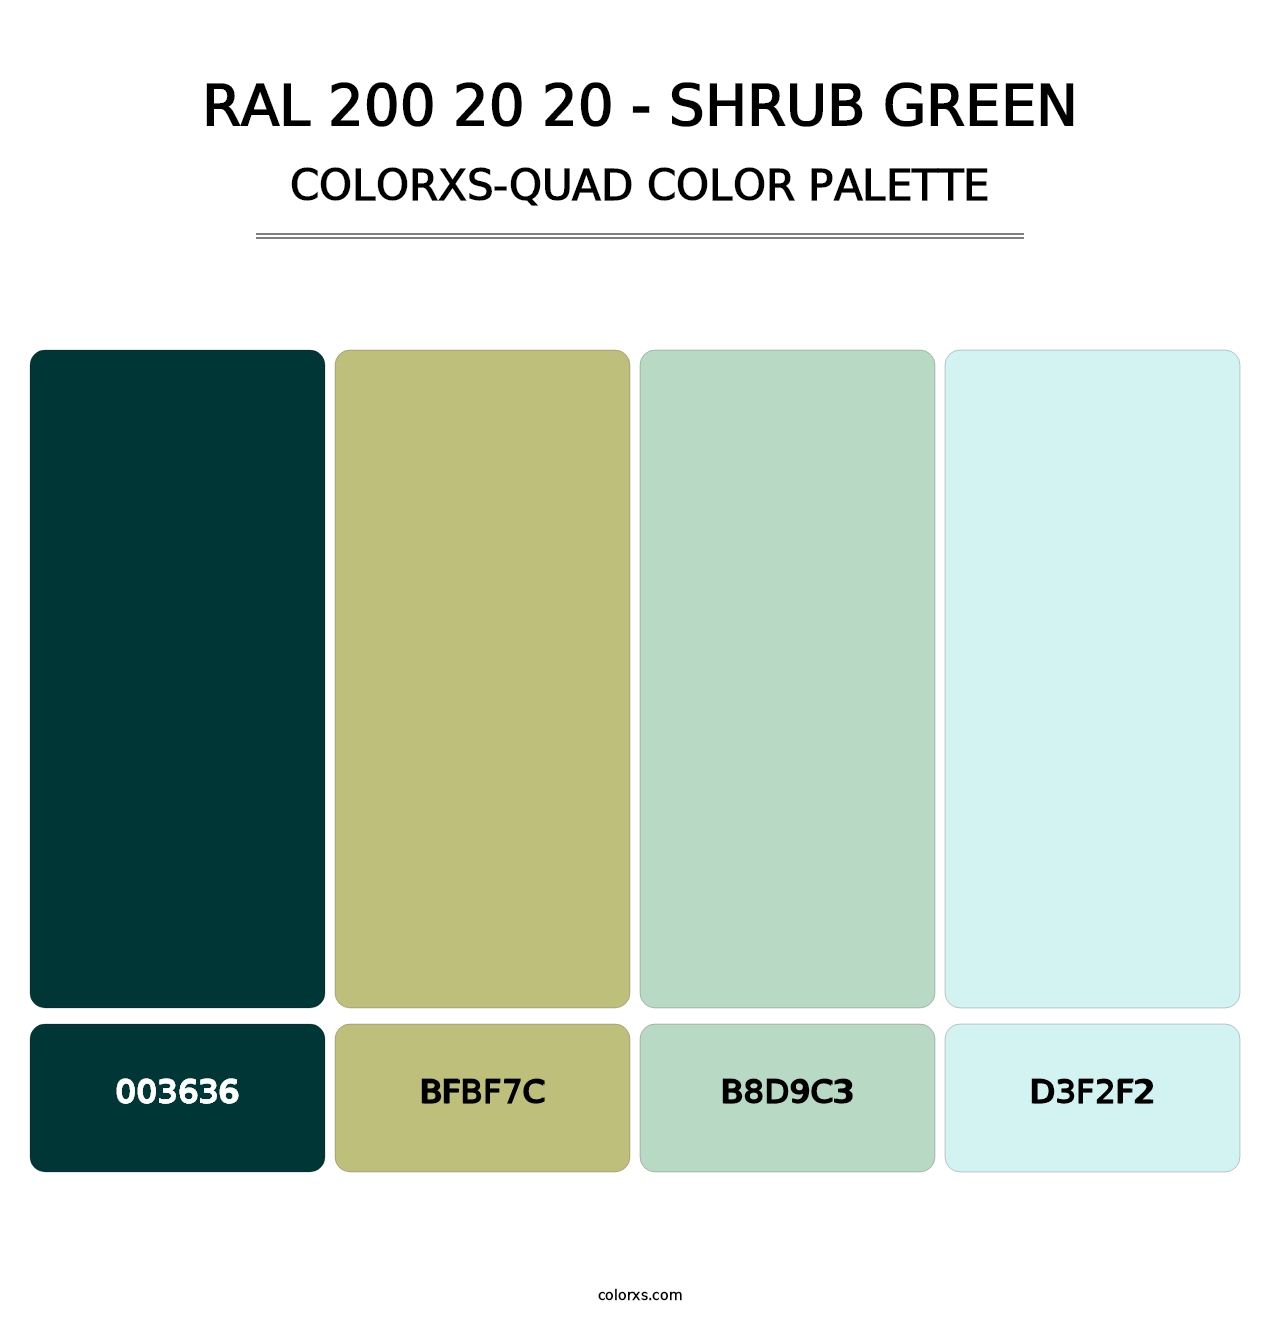 RAL 200 20 20 - Shrub Green - Colorxs Quad Palette